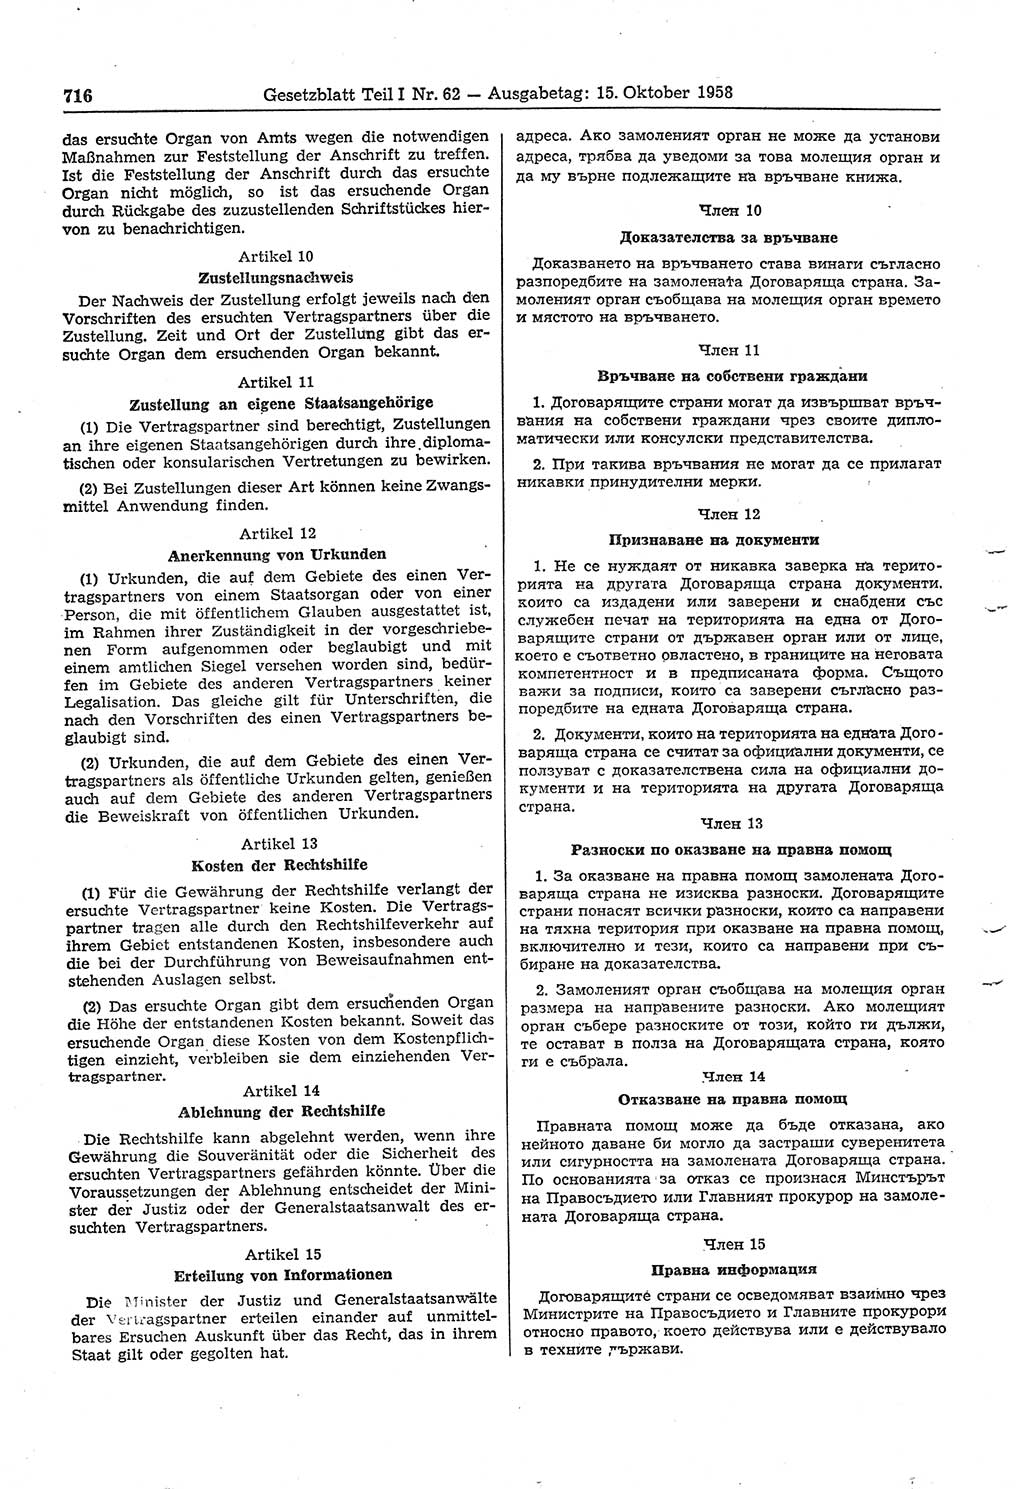 Gesetzblatt (GBl.) der Deutschen Demokratischen Republik (DDR) Teil Ⅰ 1958, Seite 716 (GBl. DDR Ⅰ 1958, S. 716)